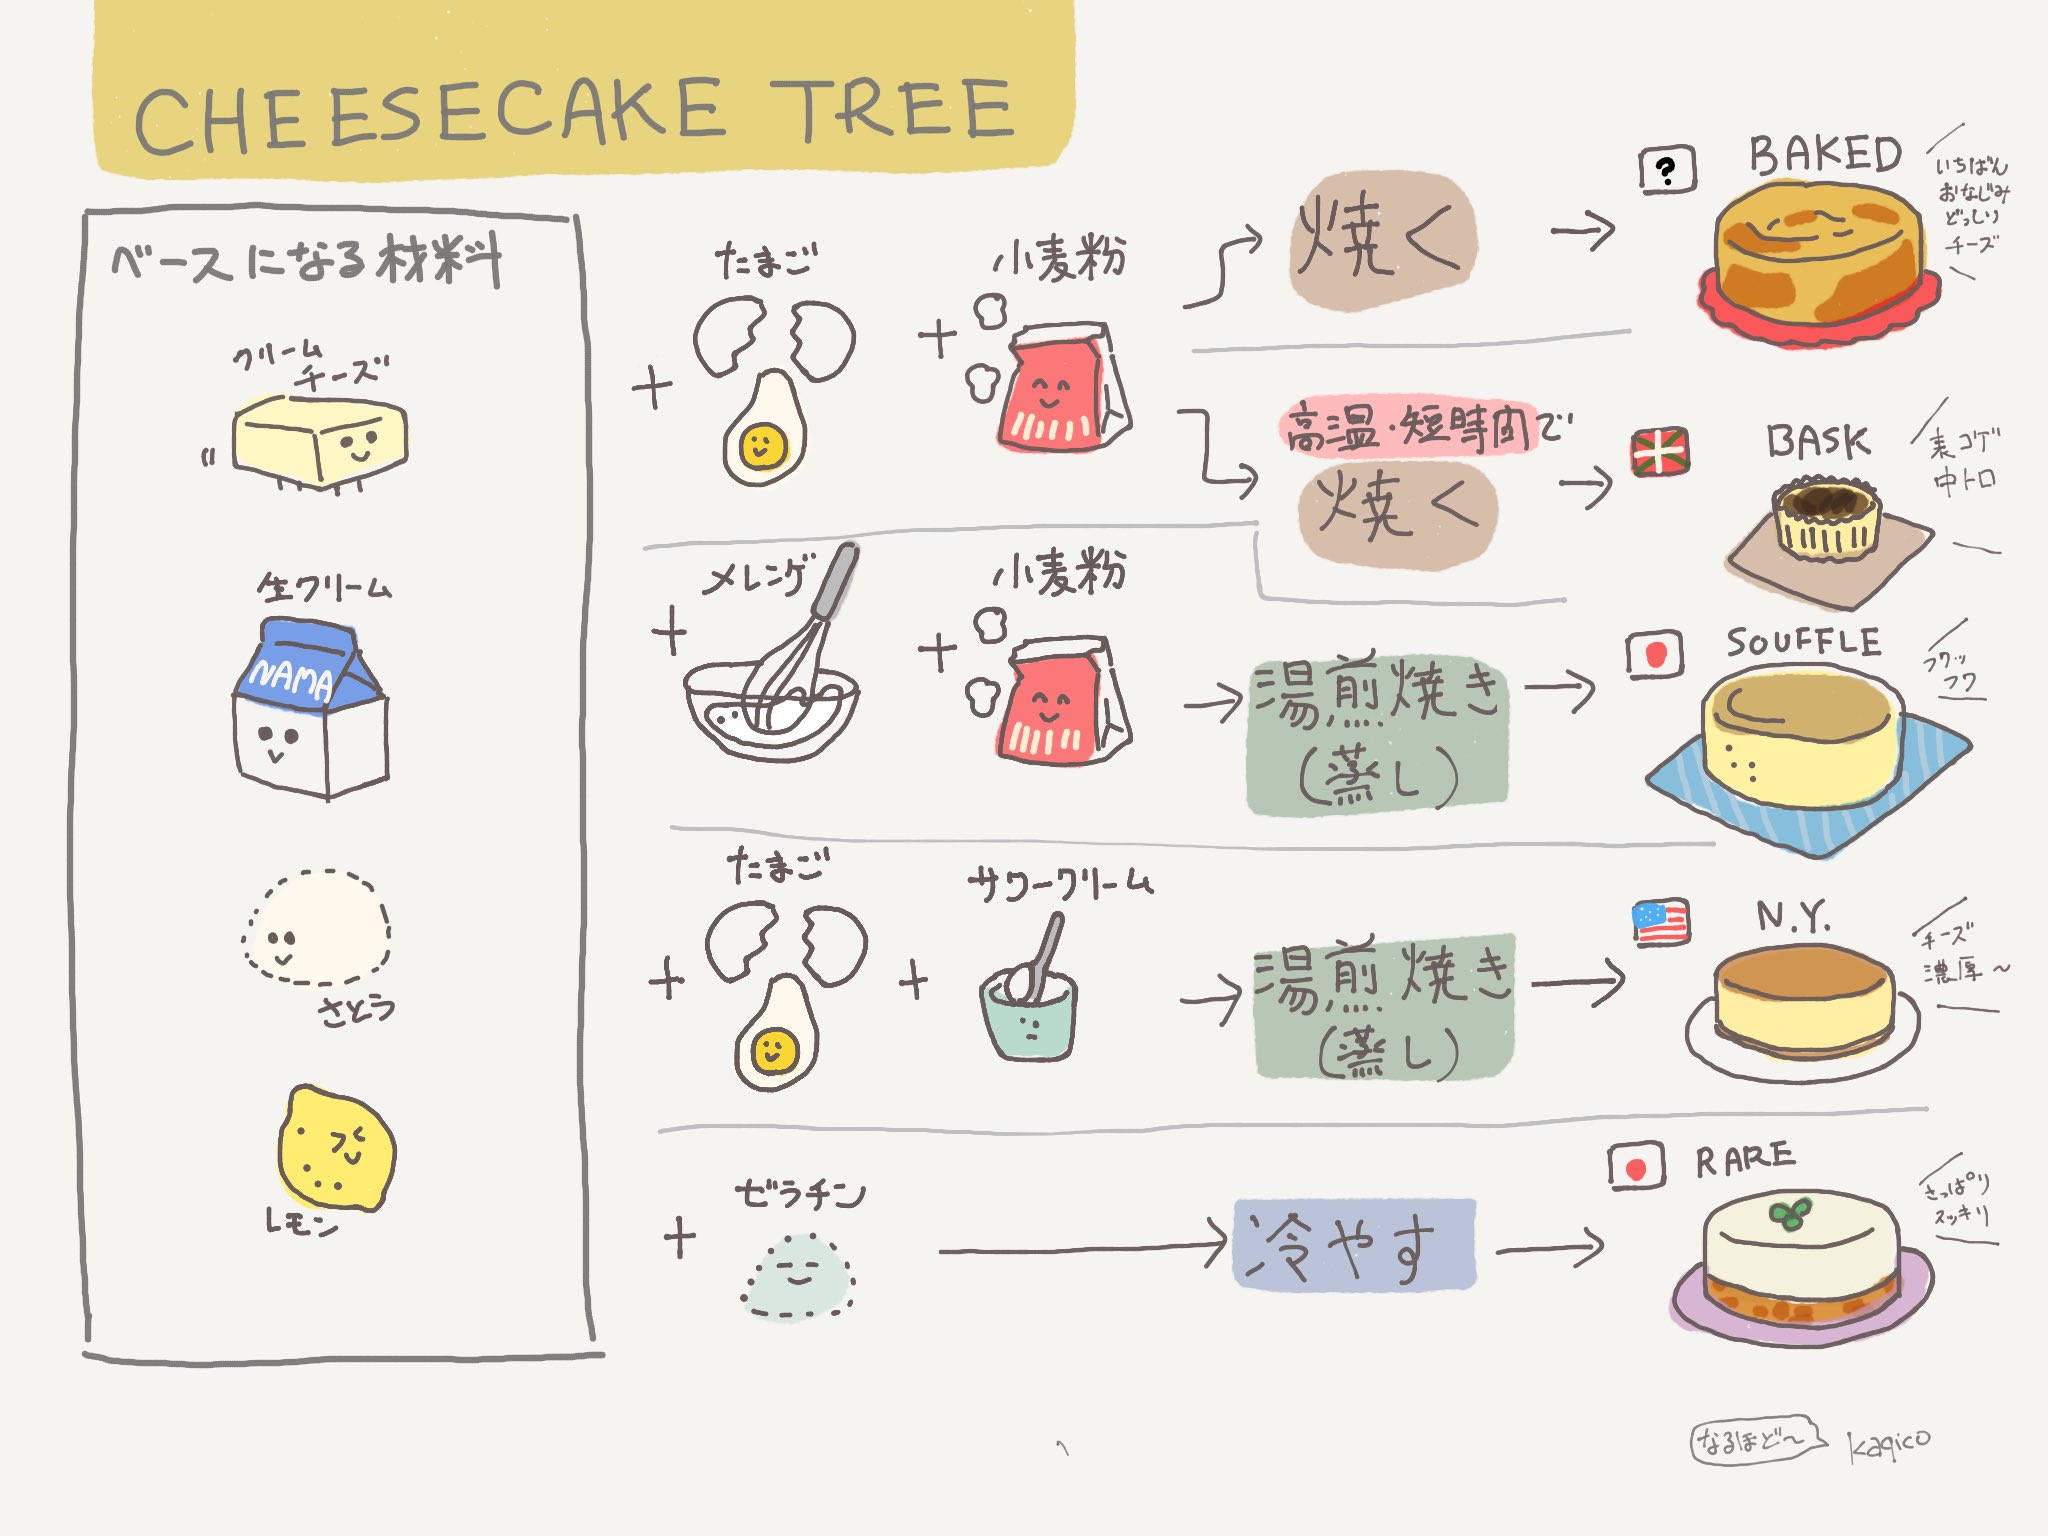 描き子 昨日ふと バスクチーズケーキの定義って何 と思って調べて作ったチーズケーキ分類表です 諸説あり こうやって一覧にする落ち着く T Co T9lfekxvme Twitter